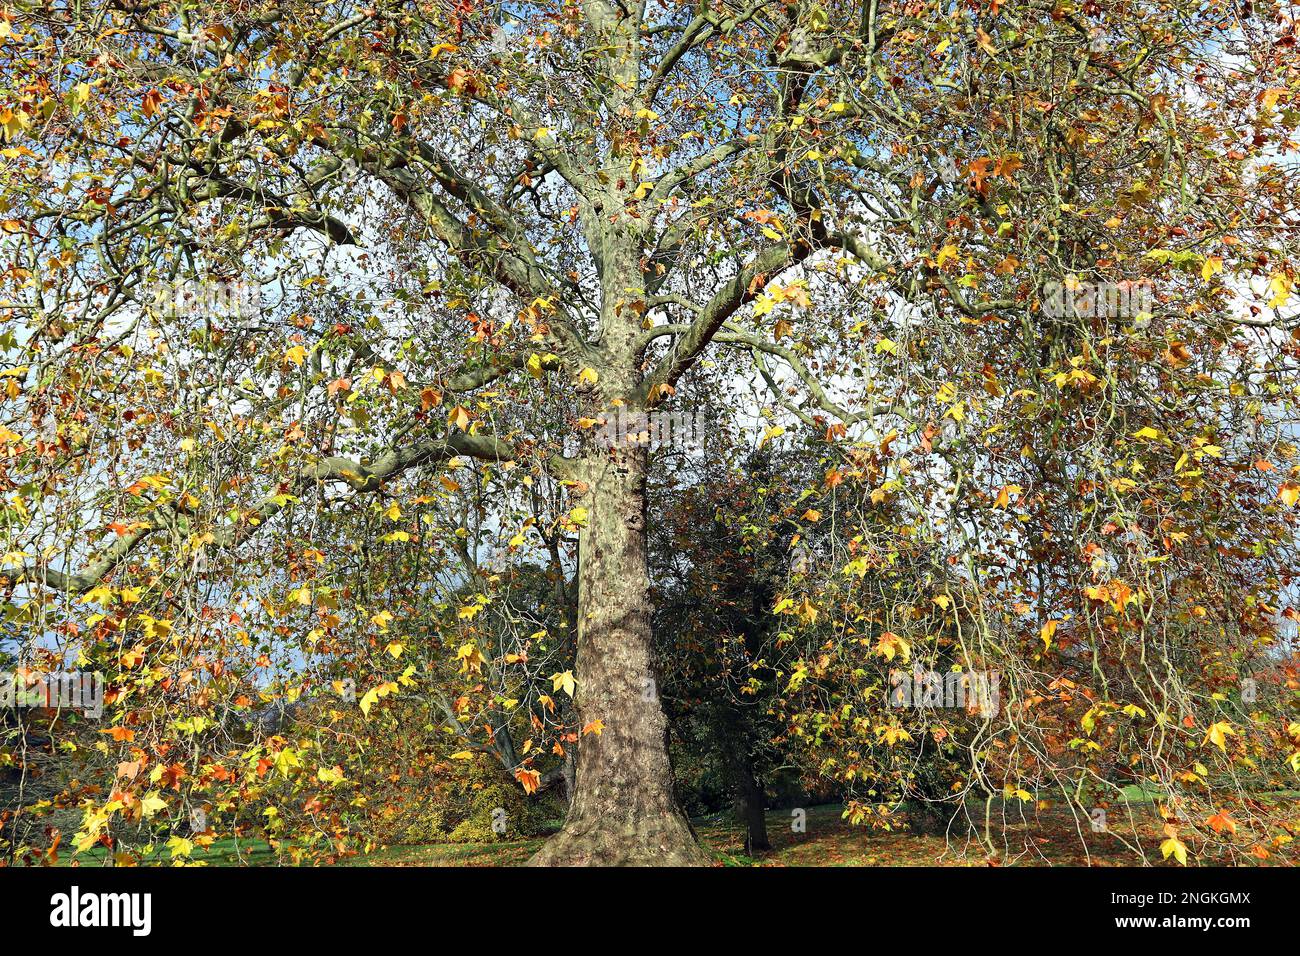 L'albero aereo londinese (Platanus x Hispanica) che mostra il fogliame giallo-marrone autunnale/autunnale; una vista familiare lungo le strade e nei parchi di Londra Foto Stock